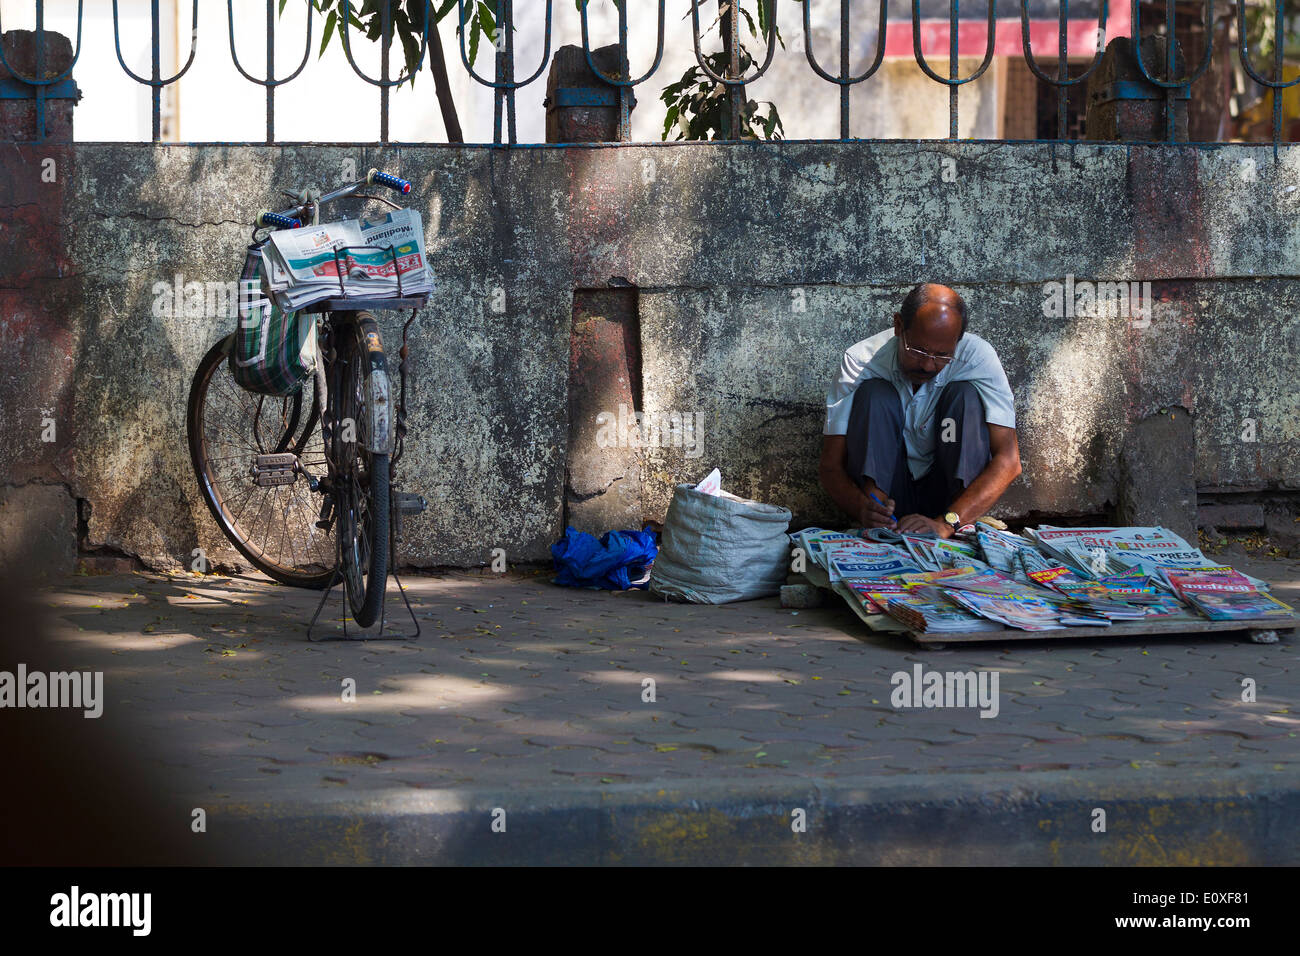 Vendedora De Pão Vietnamita Vendendo Comida De Bicicleta Na Rua Foto de  Stock Editorial - Imagem de colega, seletivo: 209656398